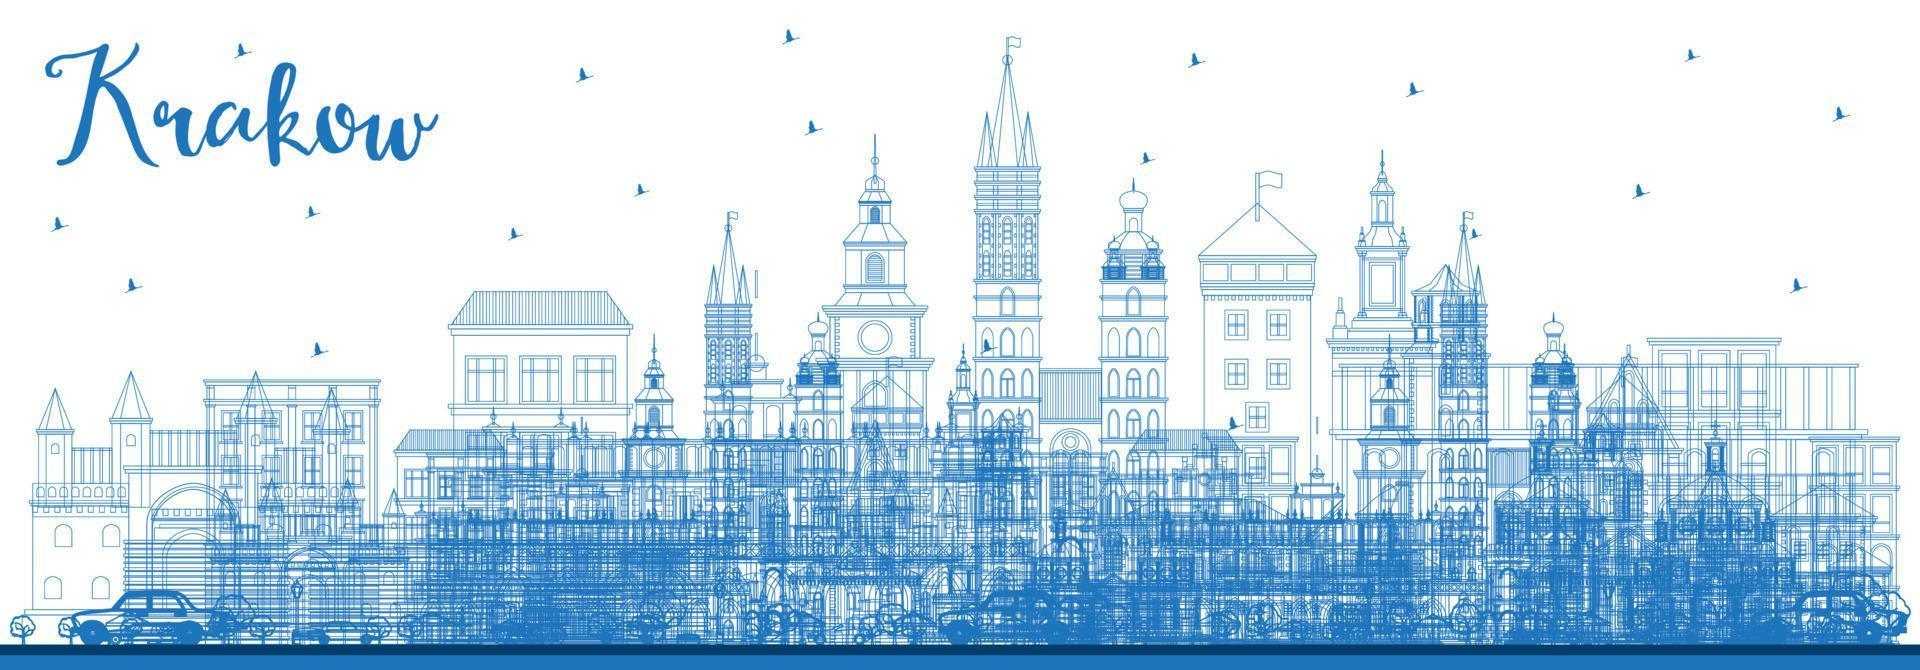 delinear el horizonte de la ciudad de Cracovia, Polonia, con edificios azules. vector